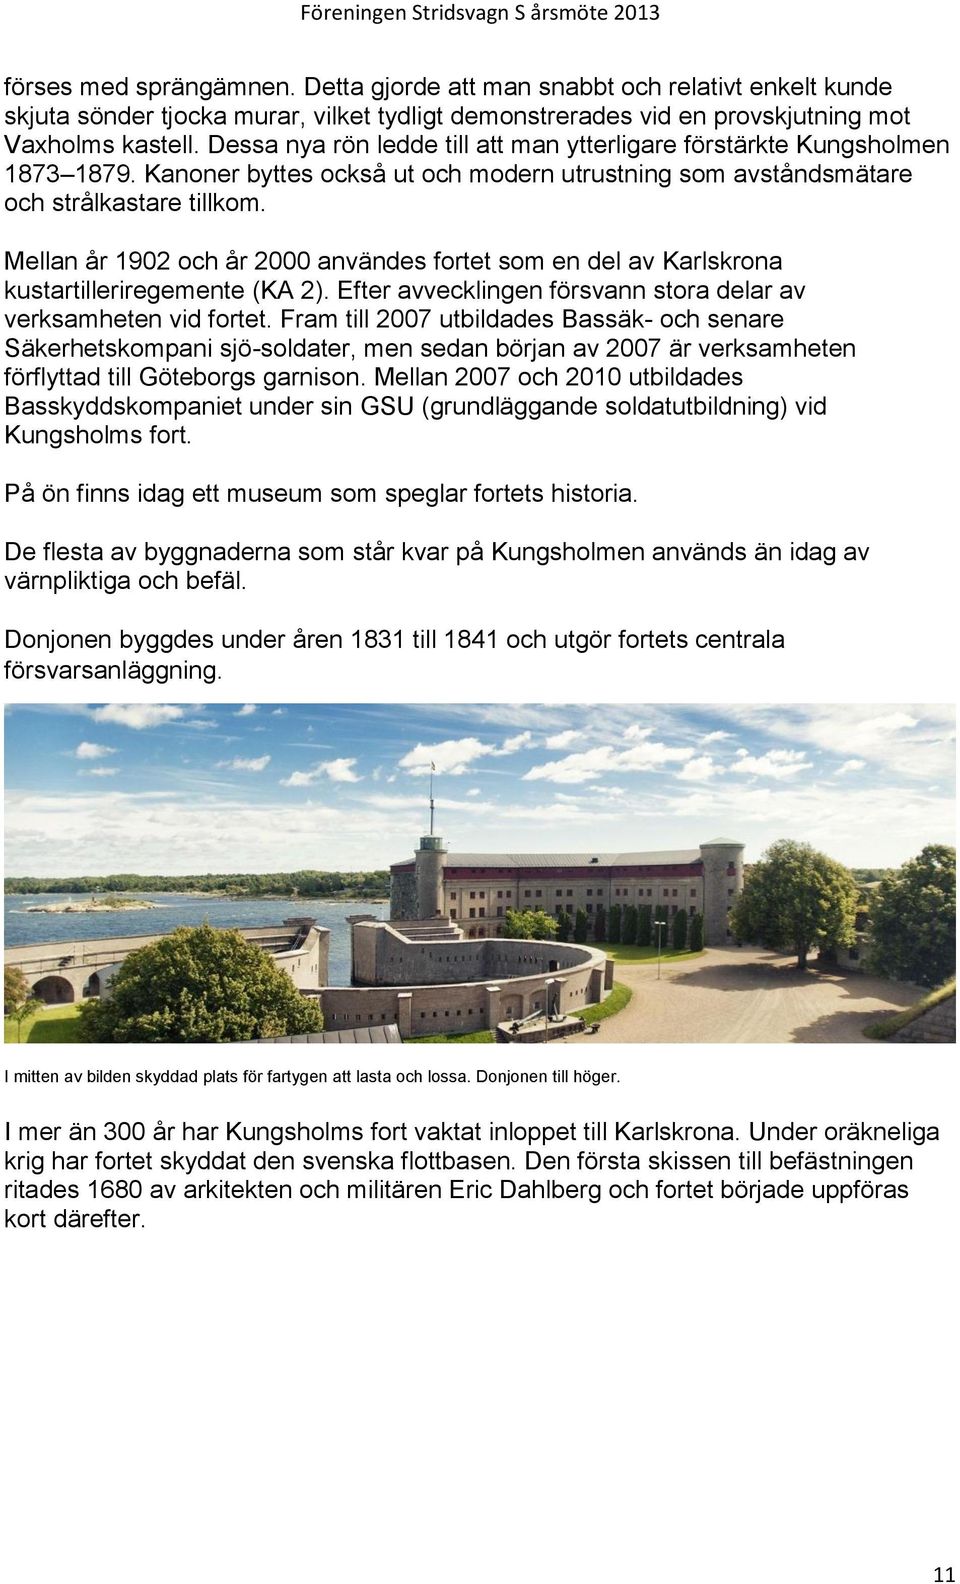 Mellan år 1902 och år 2000 användes fortet som en del av Karlskrona kustartilleriregemente (KA 2). Efter avvecklingen försvann stora delar av verksamheten vid fortet.